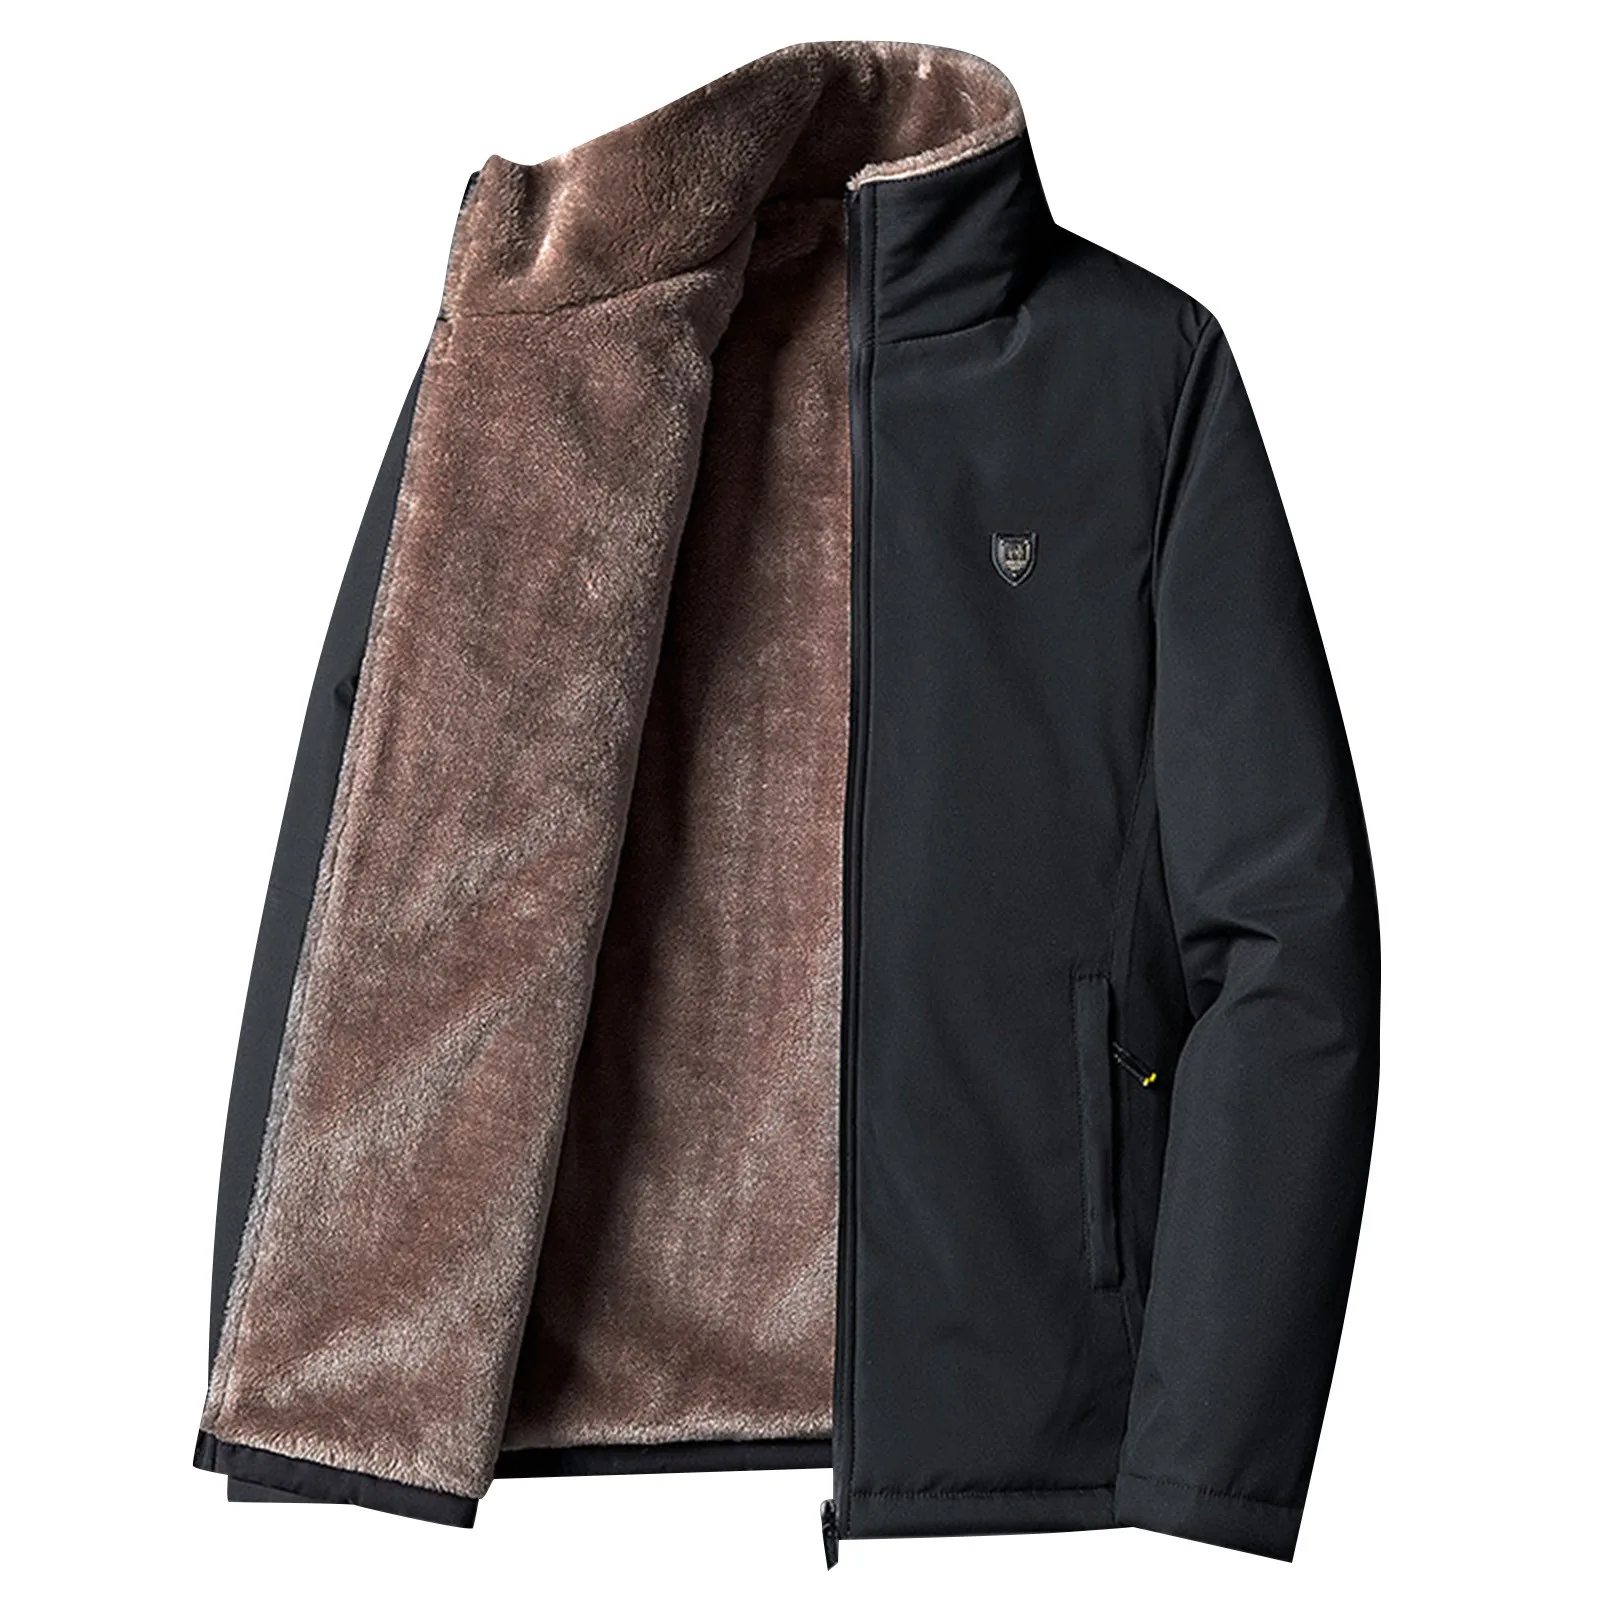 

2023 New Casual Classic Parka Cotton Jacket Coat Warm Fleece Winter Jacket Men Outerwear Windbreaker Lamb Wool Parka Tops